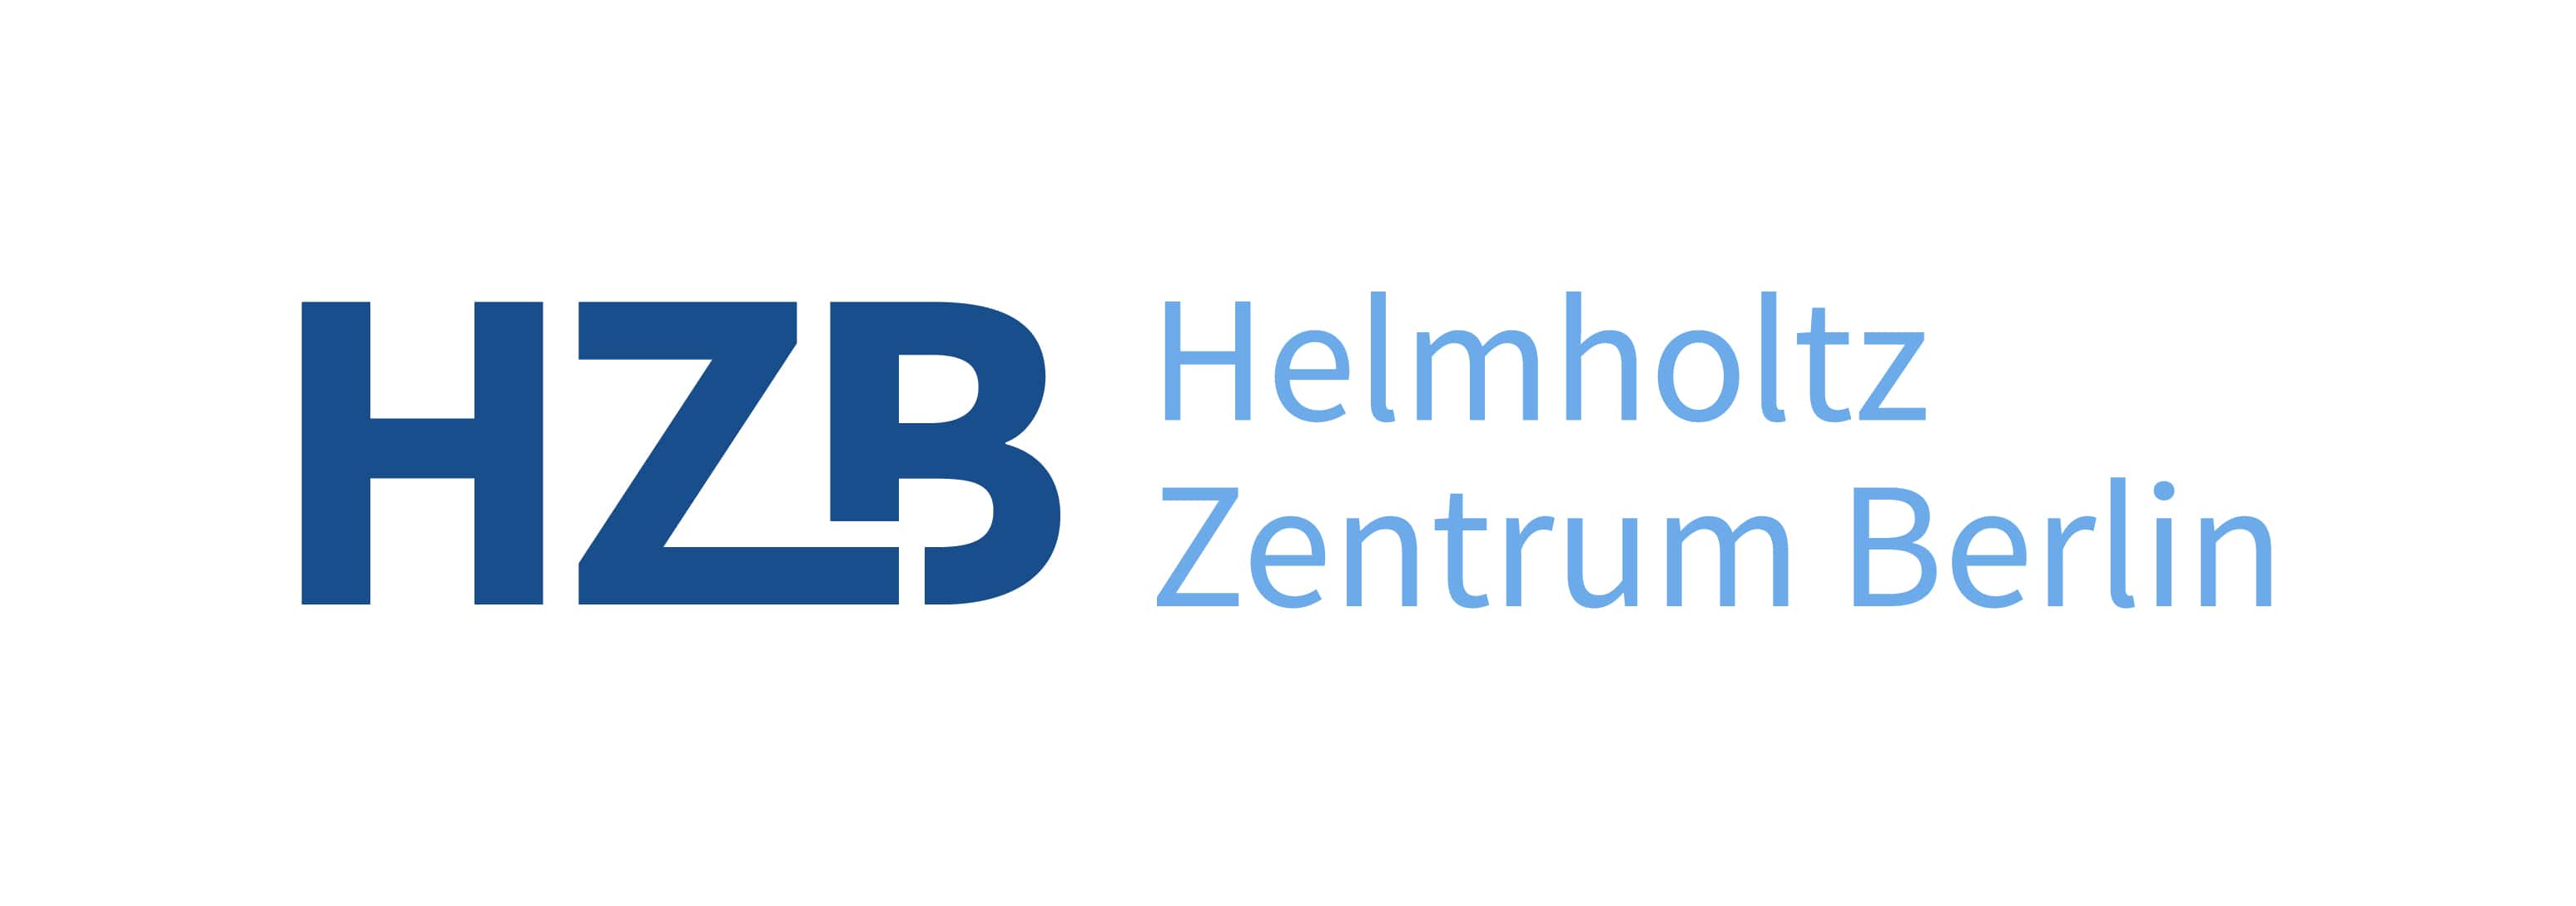 Helmholtz-Zentrum Berlin für Materialien und Energie logo